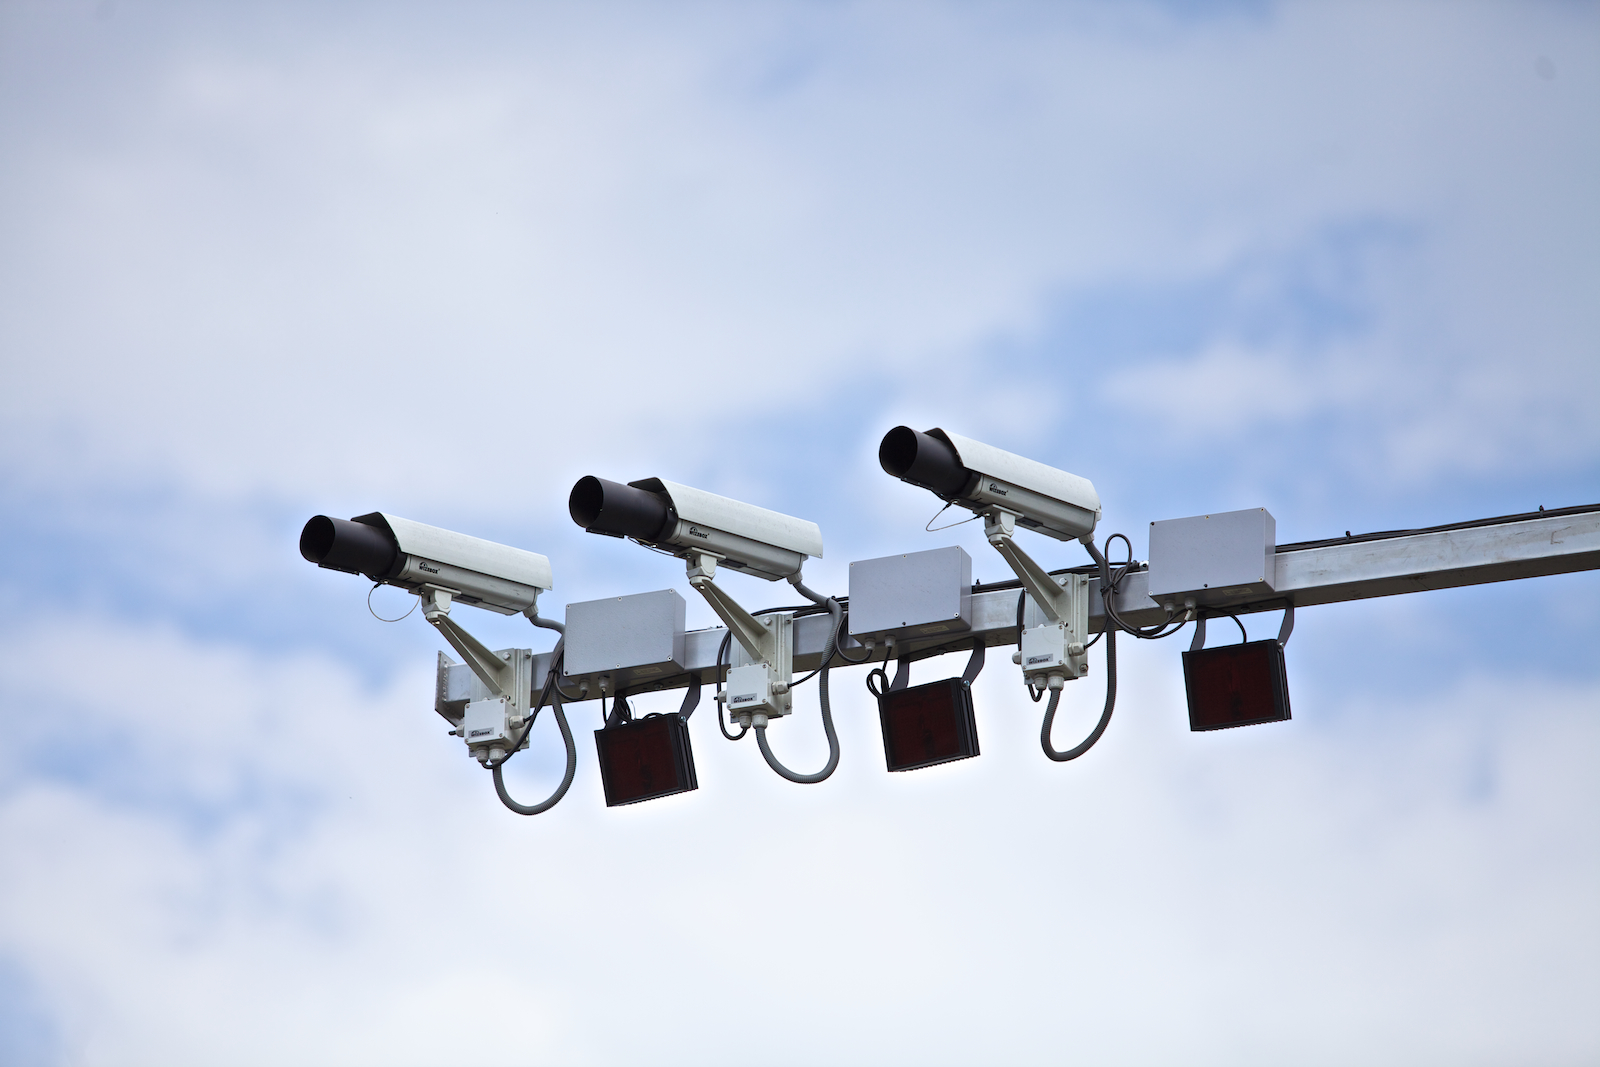 В городах будут установлены уникальные новые камеры для фиксации нарушений ПДД